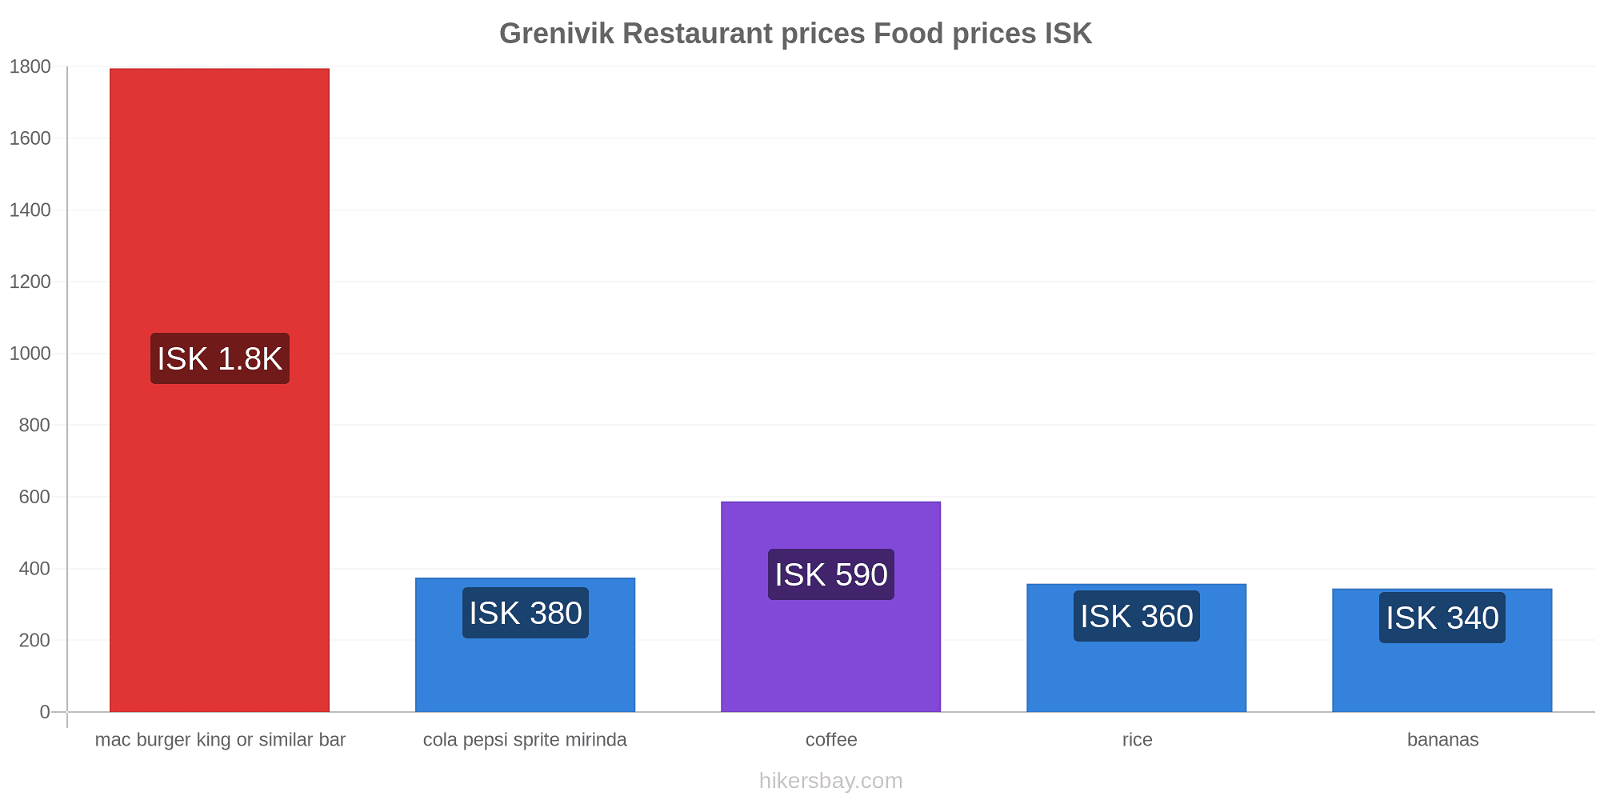 Grenivik price changes hikersbay.com